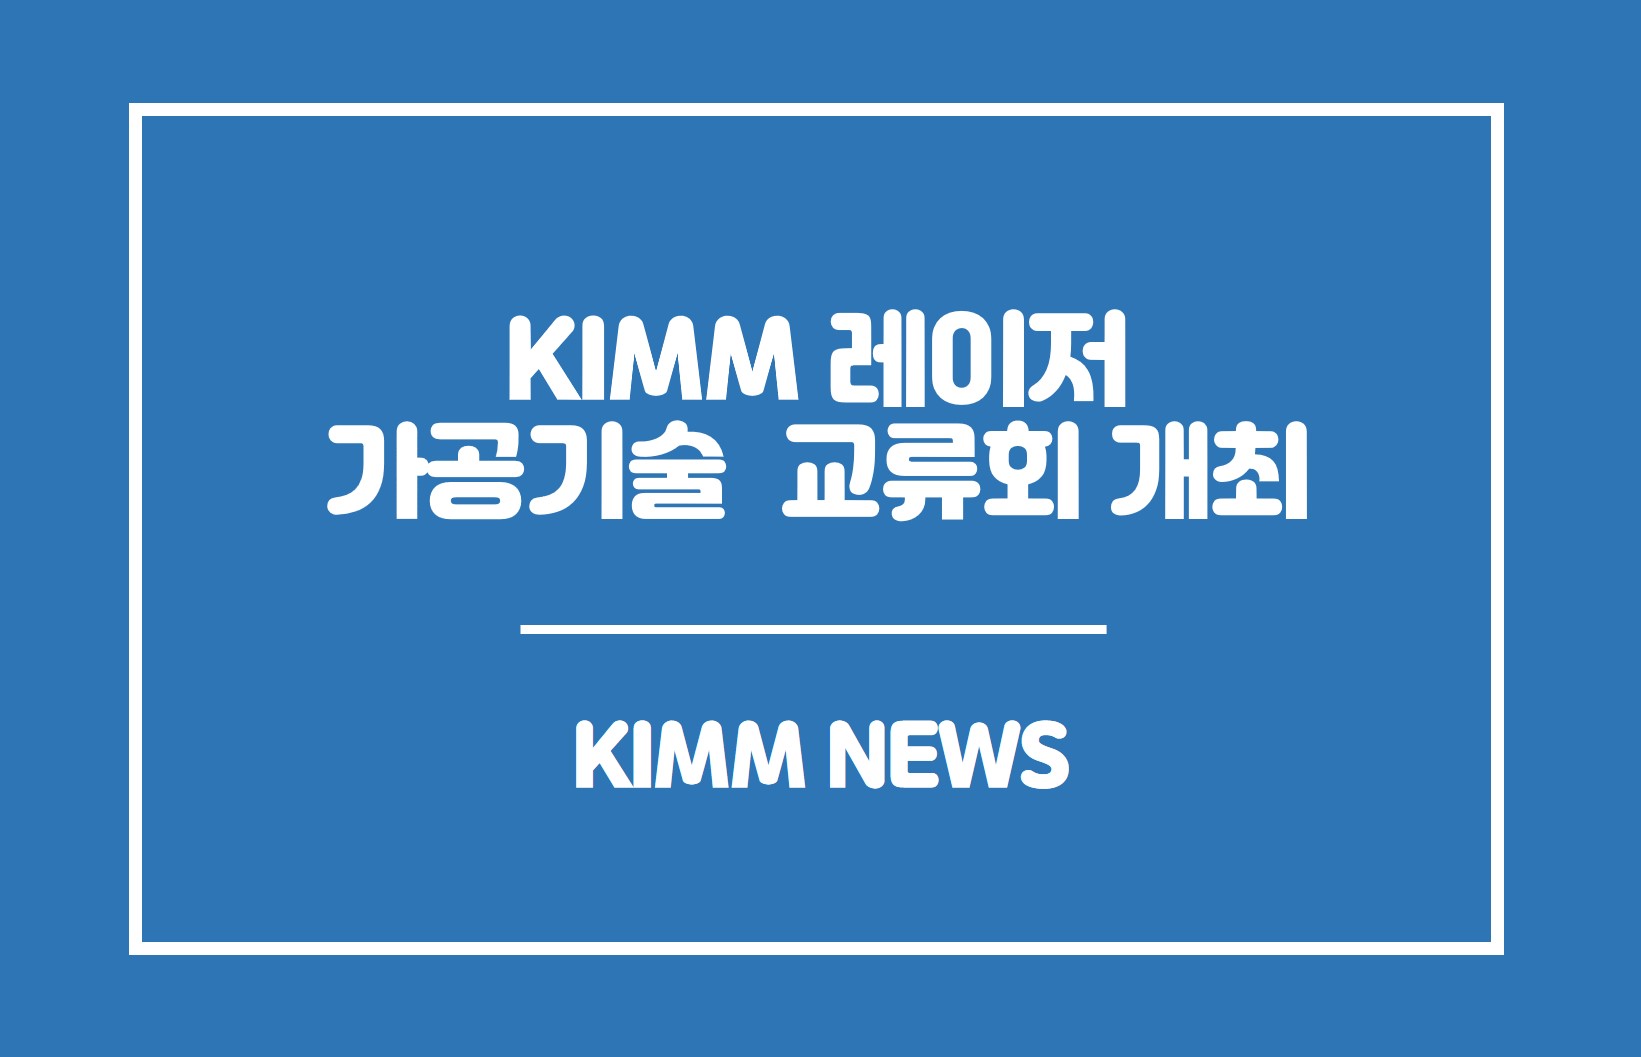 KIMM 레이저 가공기술 교류회 개최. KIMM NEWS